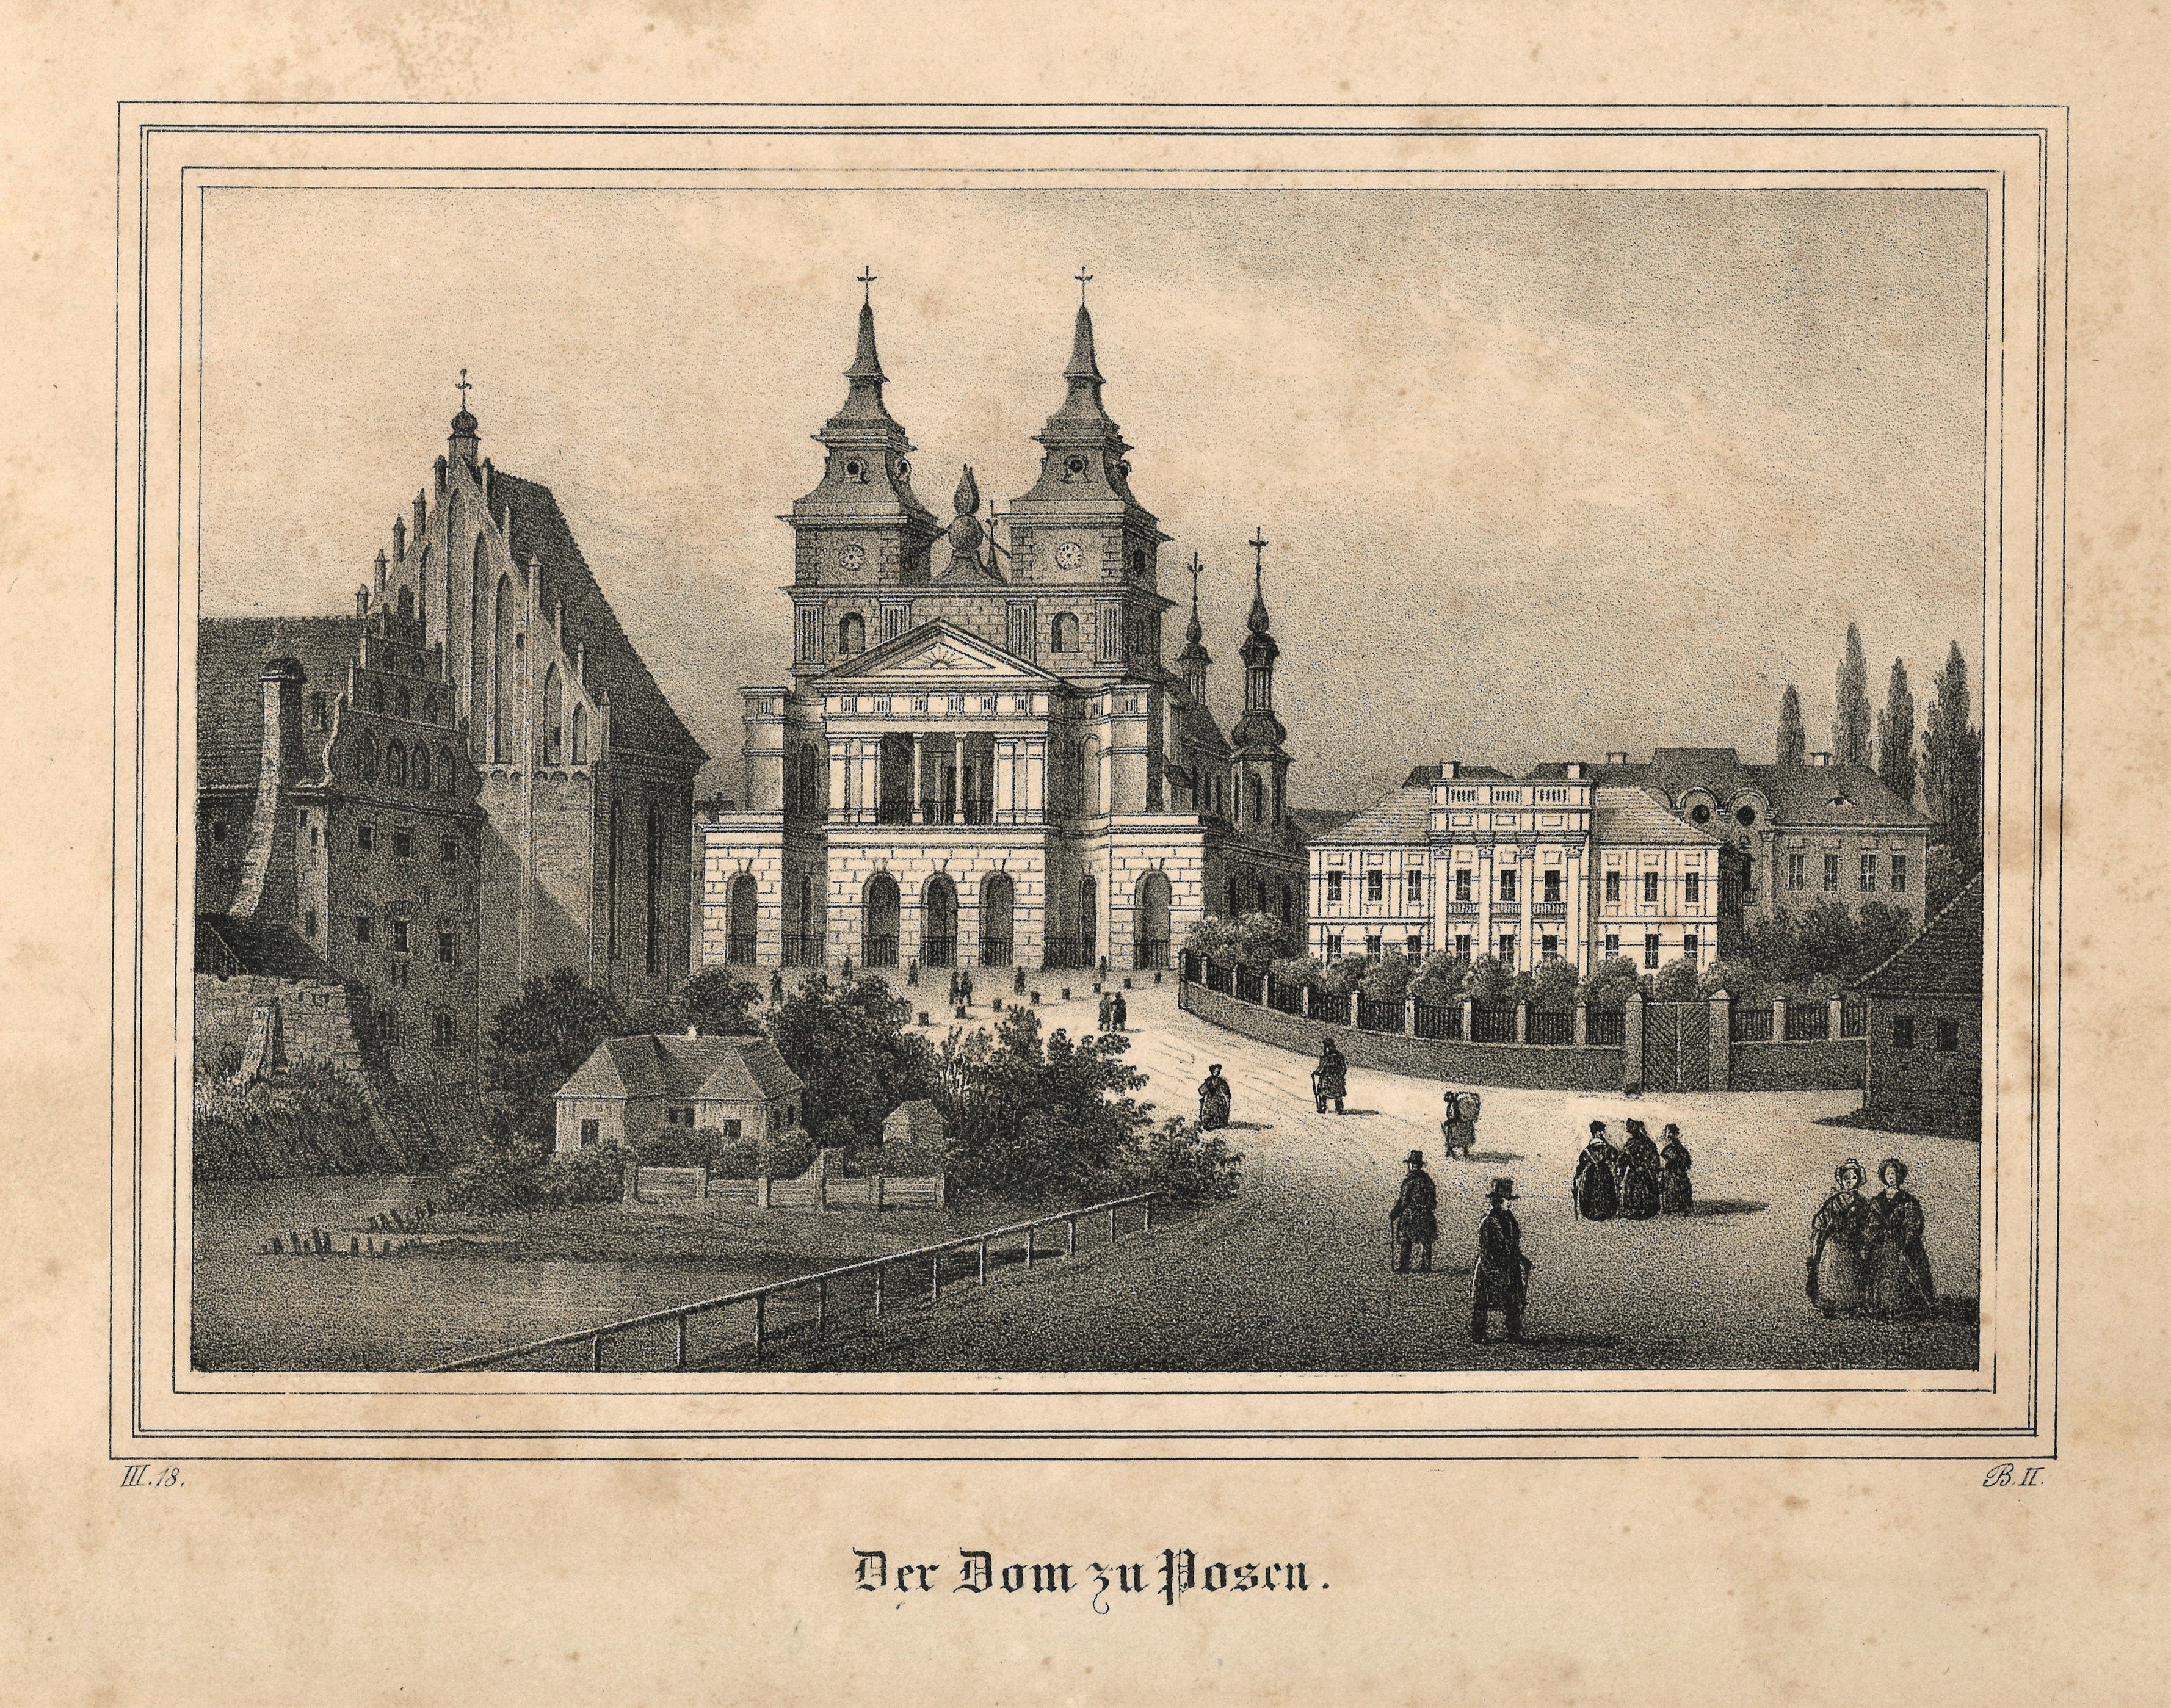 Posen / Poznań: Dom von Westen (Landesgeschichtliche Vereinigung für die Mark Brandenburg e.V., Archiv CC BY)